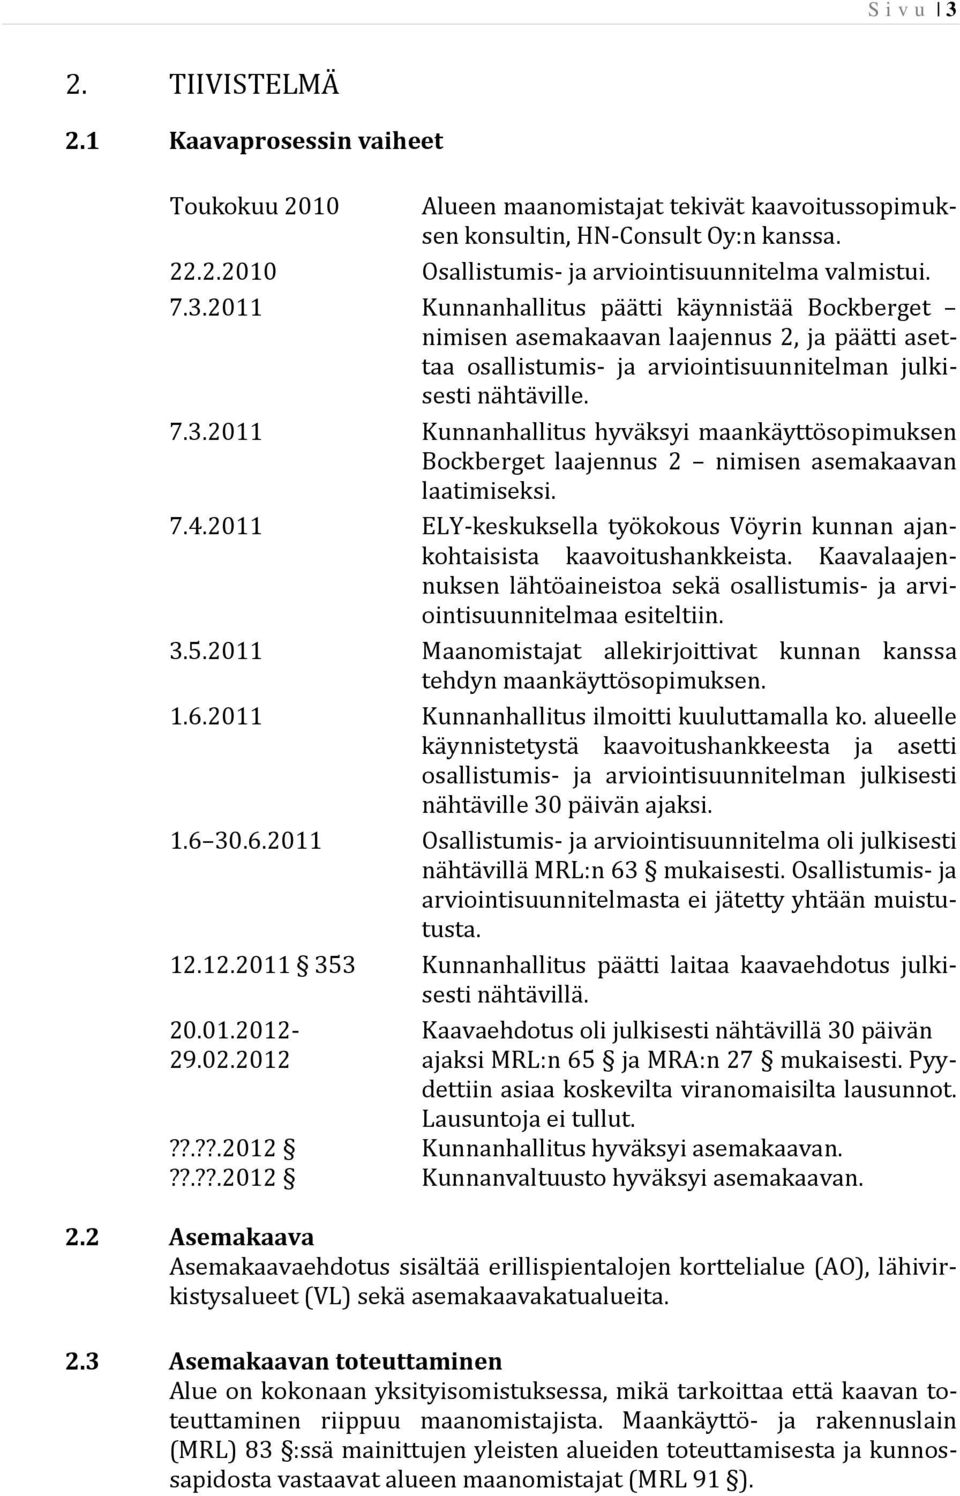 7.4.2011 ELY-keskuksella työkokous Vöyrin kunnan ajankohtaisista kaavoitushankkeista. Kaavalaajennuksen lähtöaineistoa sekä osallistumis- ja arviointisuunnitelmaa esiteltiin. 3.5.